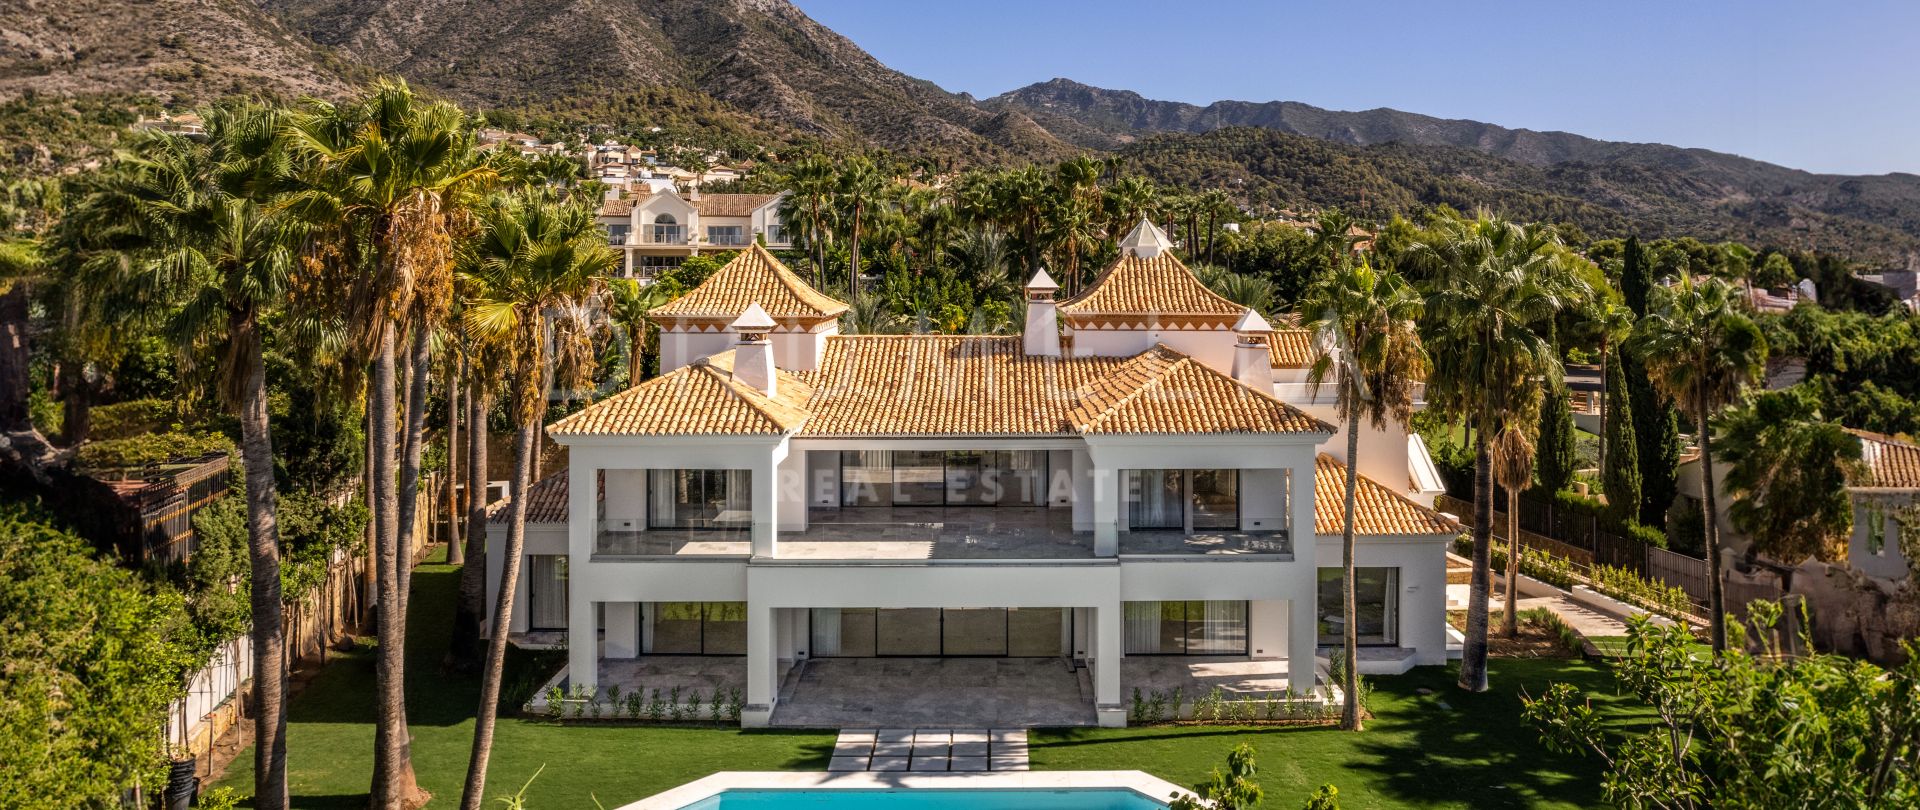 Excepcional Villa Mediterránea Moderna, Sierra Blanca, Milla de Oro de Marbella